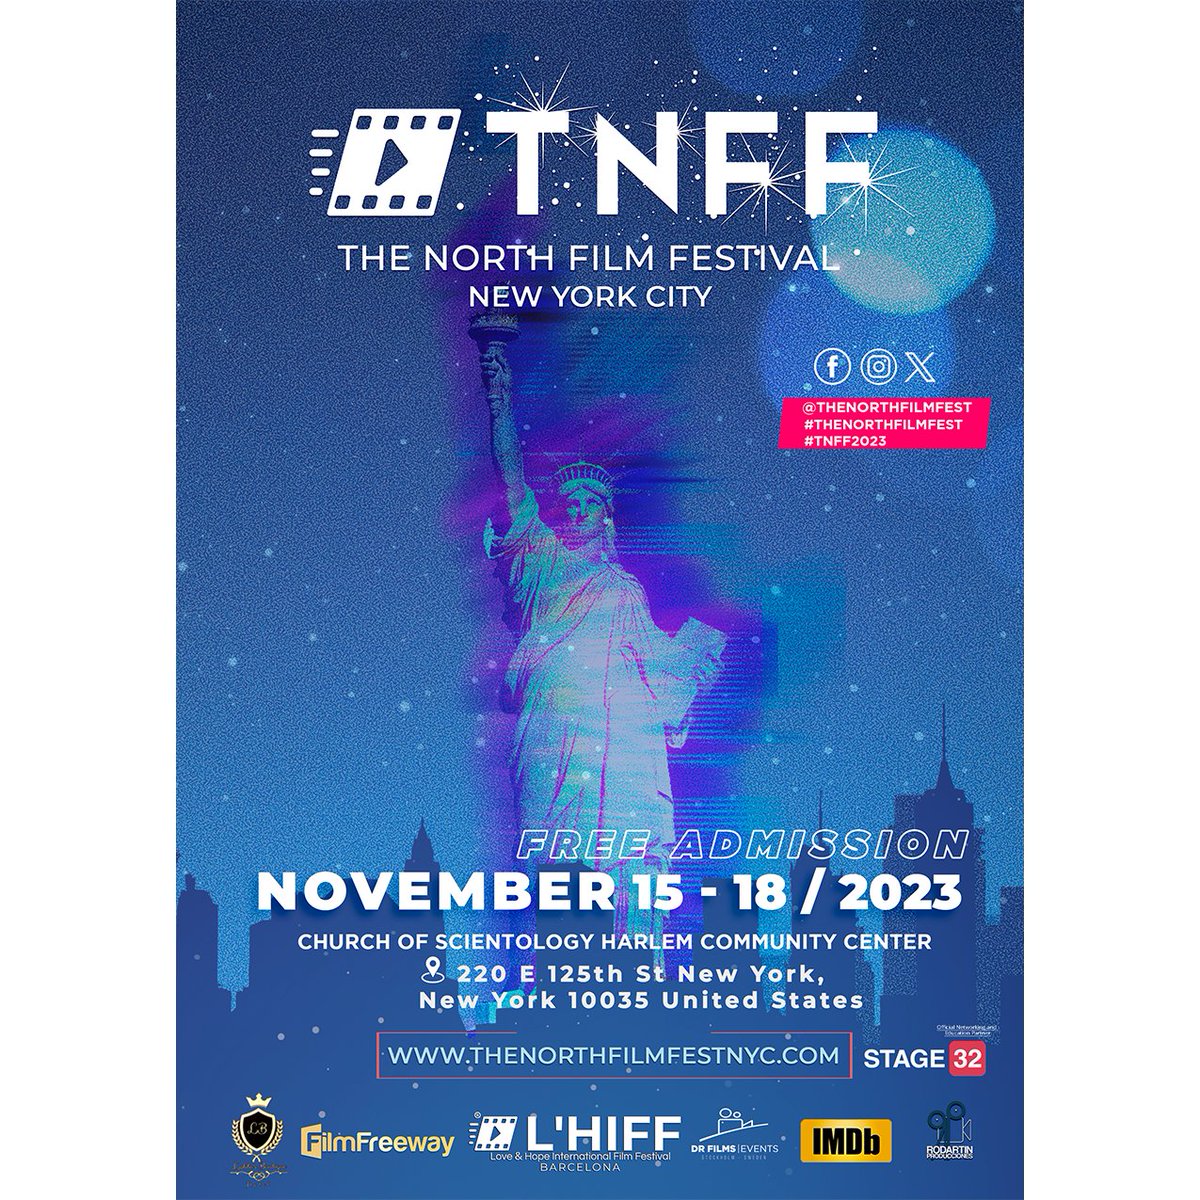 northfilmfest tweet picture